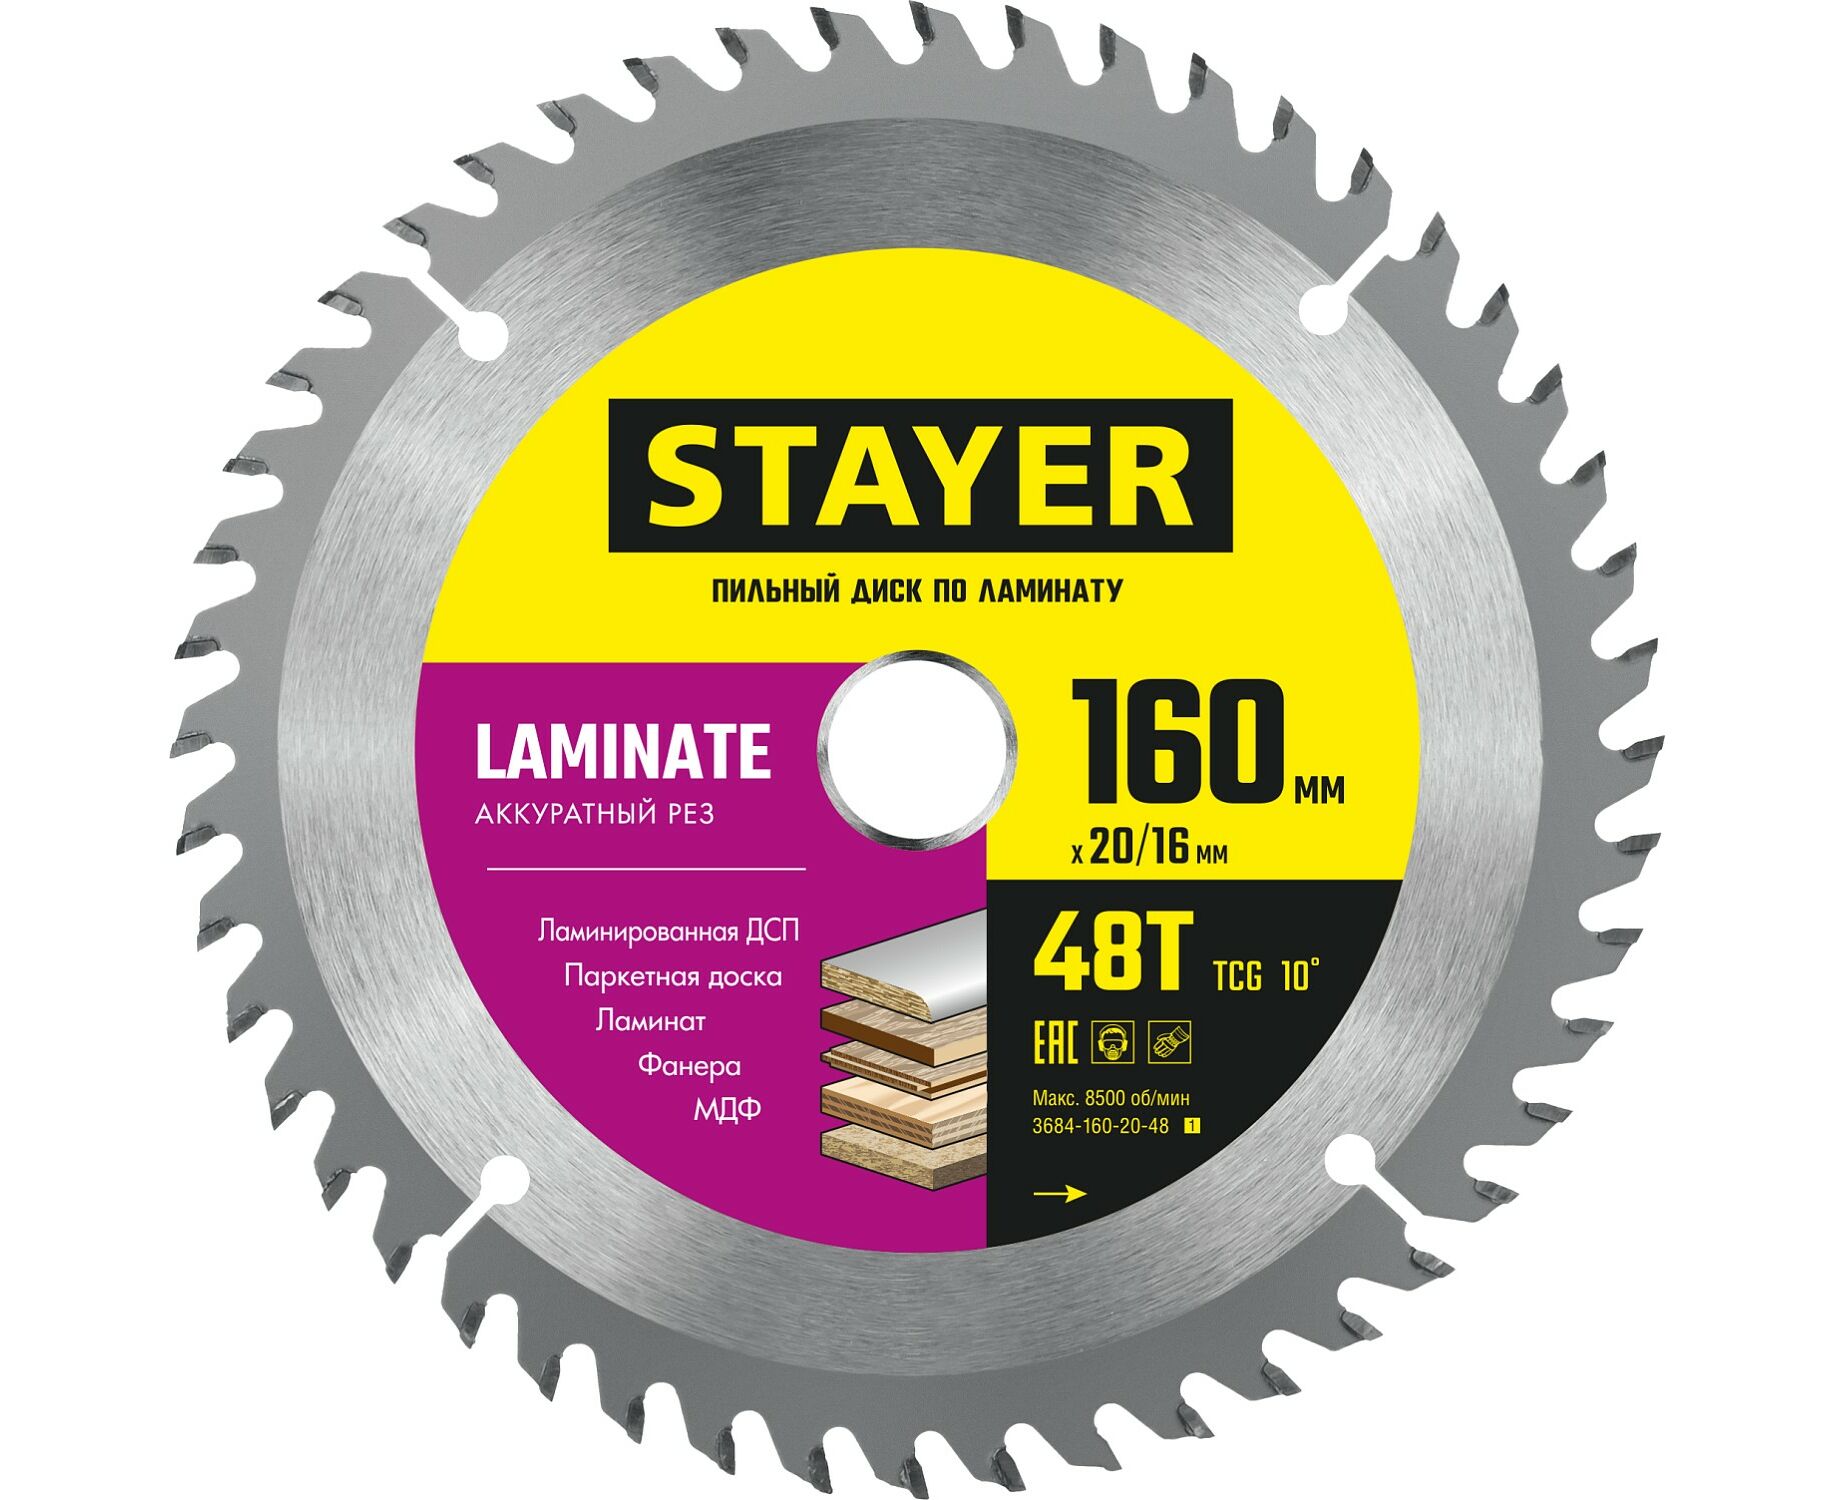 Пильный диск STAYER LAMINATE 160 x 20/16мм 48T, по ламинату, аккуратный рез пильный диск stayer laminate 230 x 32 30мм 72т по ламинату аккуратный рез